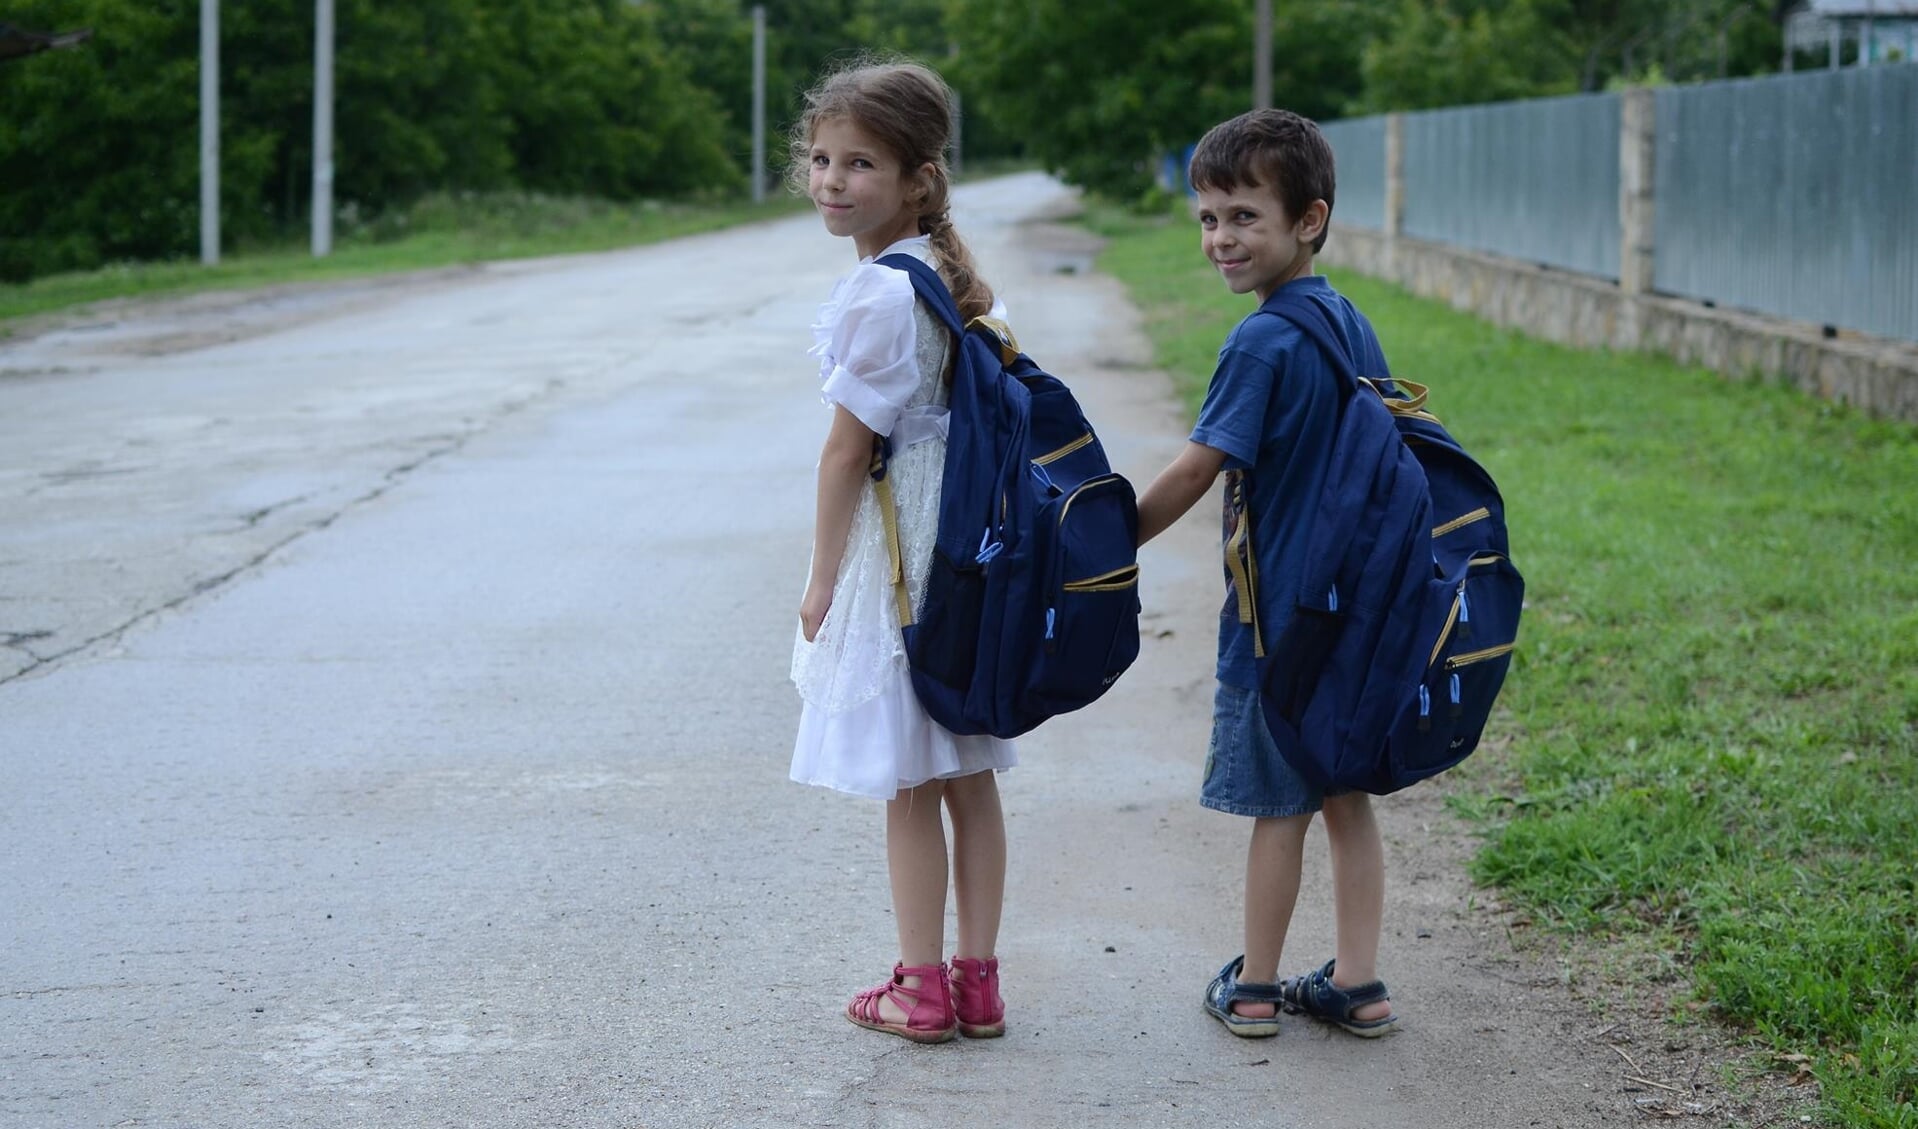 Oost-Europese kinderen op weg naar school met goed gevulde rugzak schoolspullen